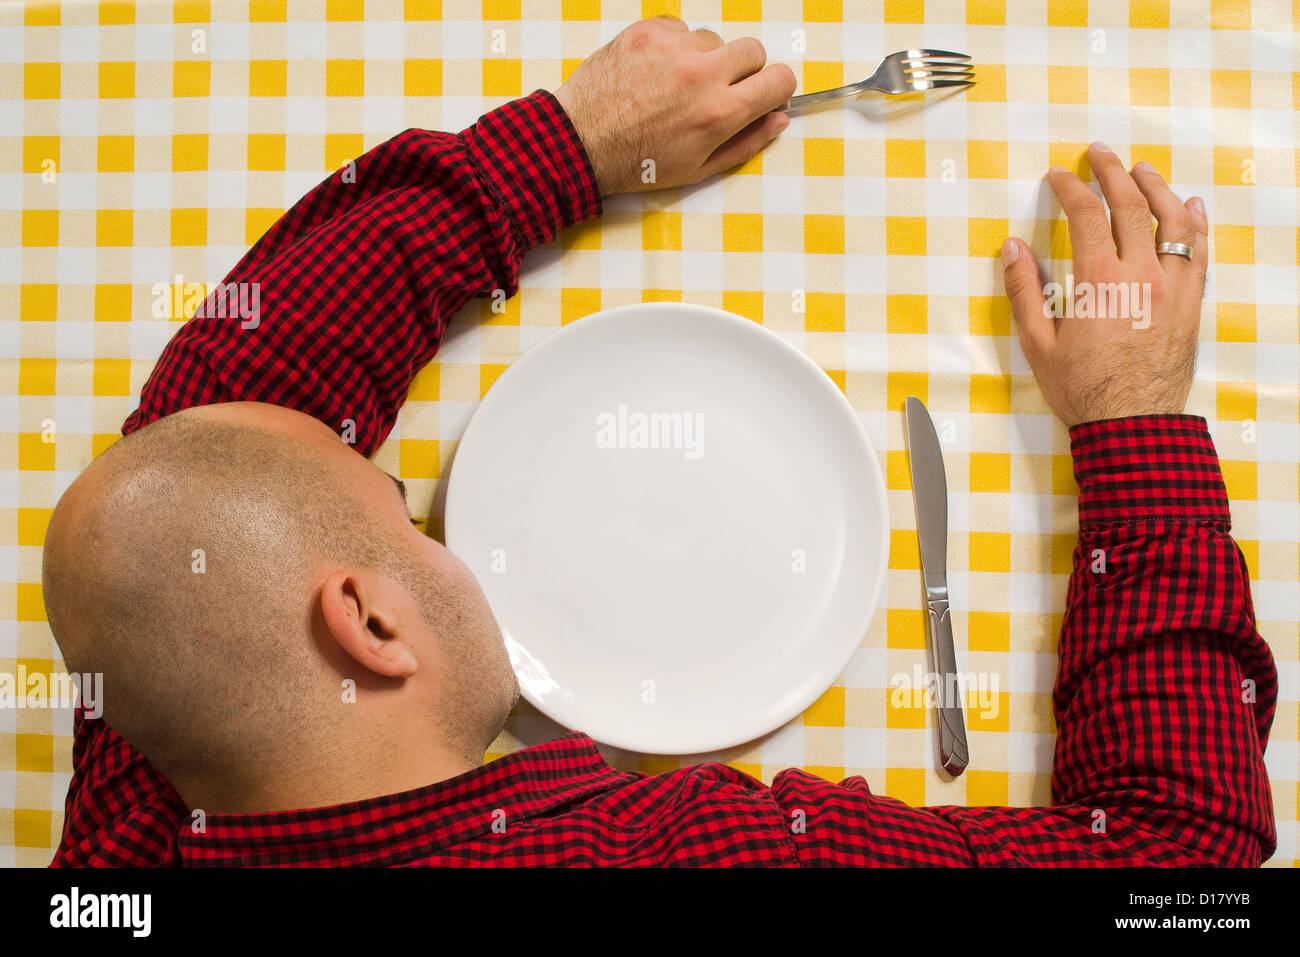 Adulto joven valiente hombre dormido en la mesa con tenedor y cuchillo en sus manos Foto de stock